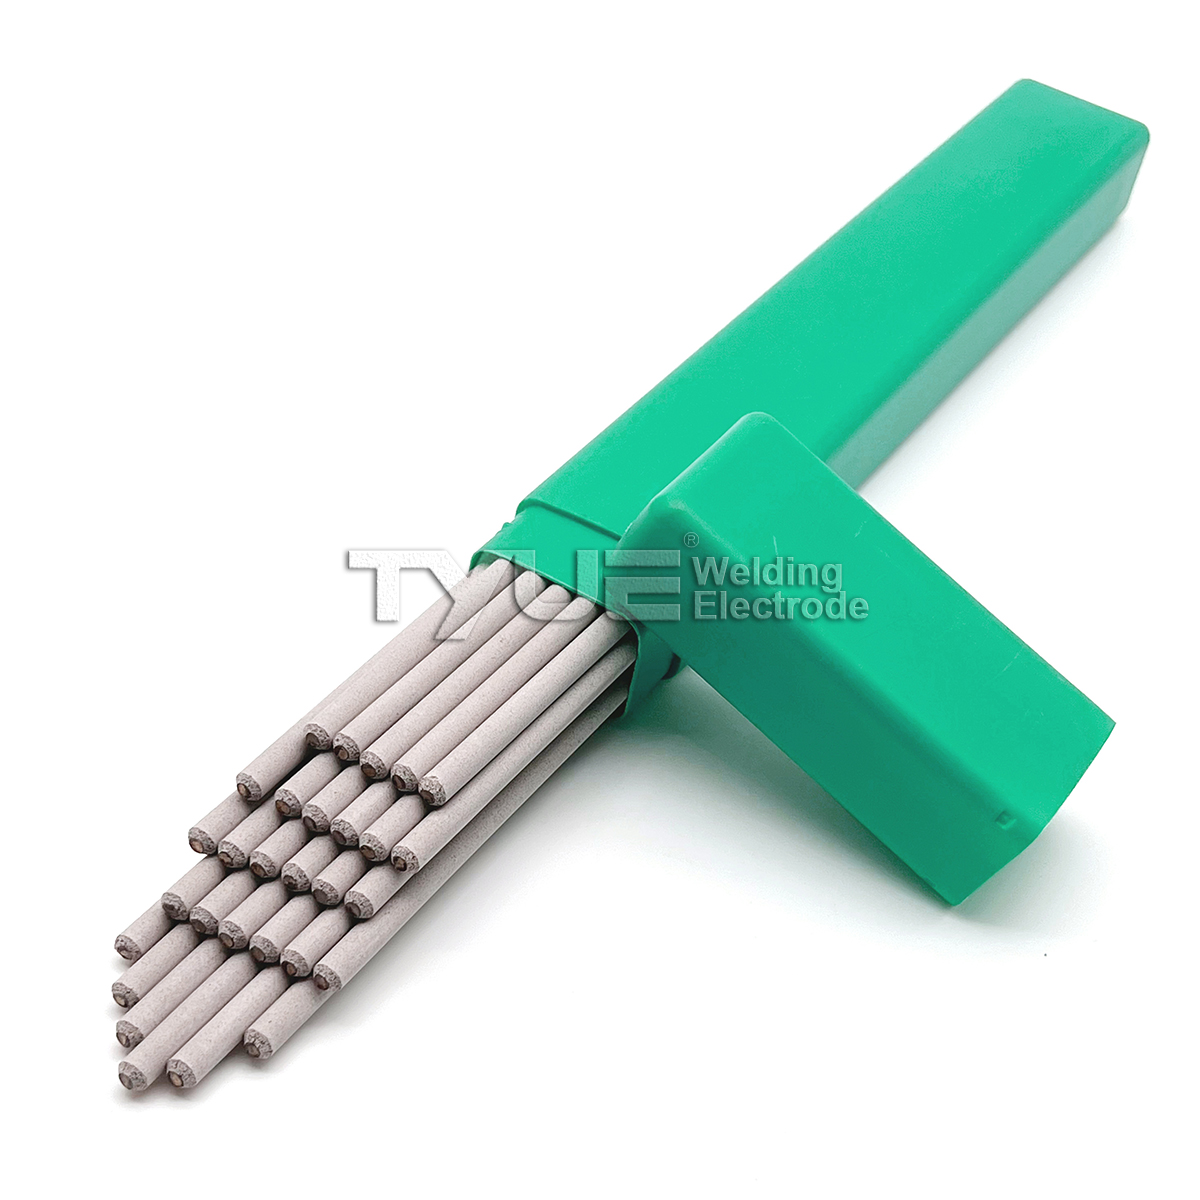 Beste kwaliteit Tyue-merk AWS A5.11 ENiCu-7 op nikkel gebaseerde laselektroden, lasstaven van nikkellegeringen voor booglassen